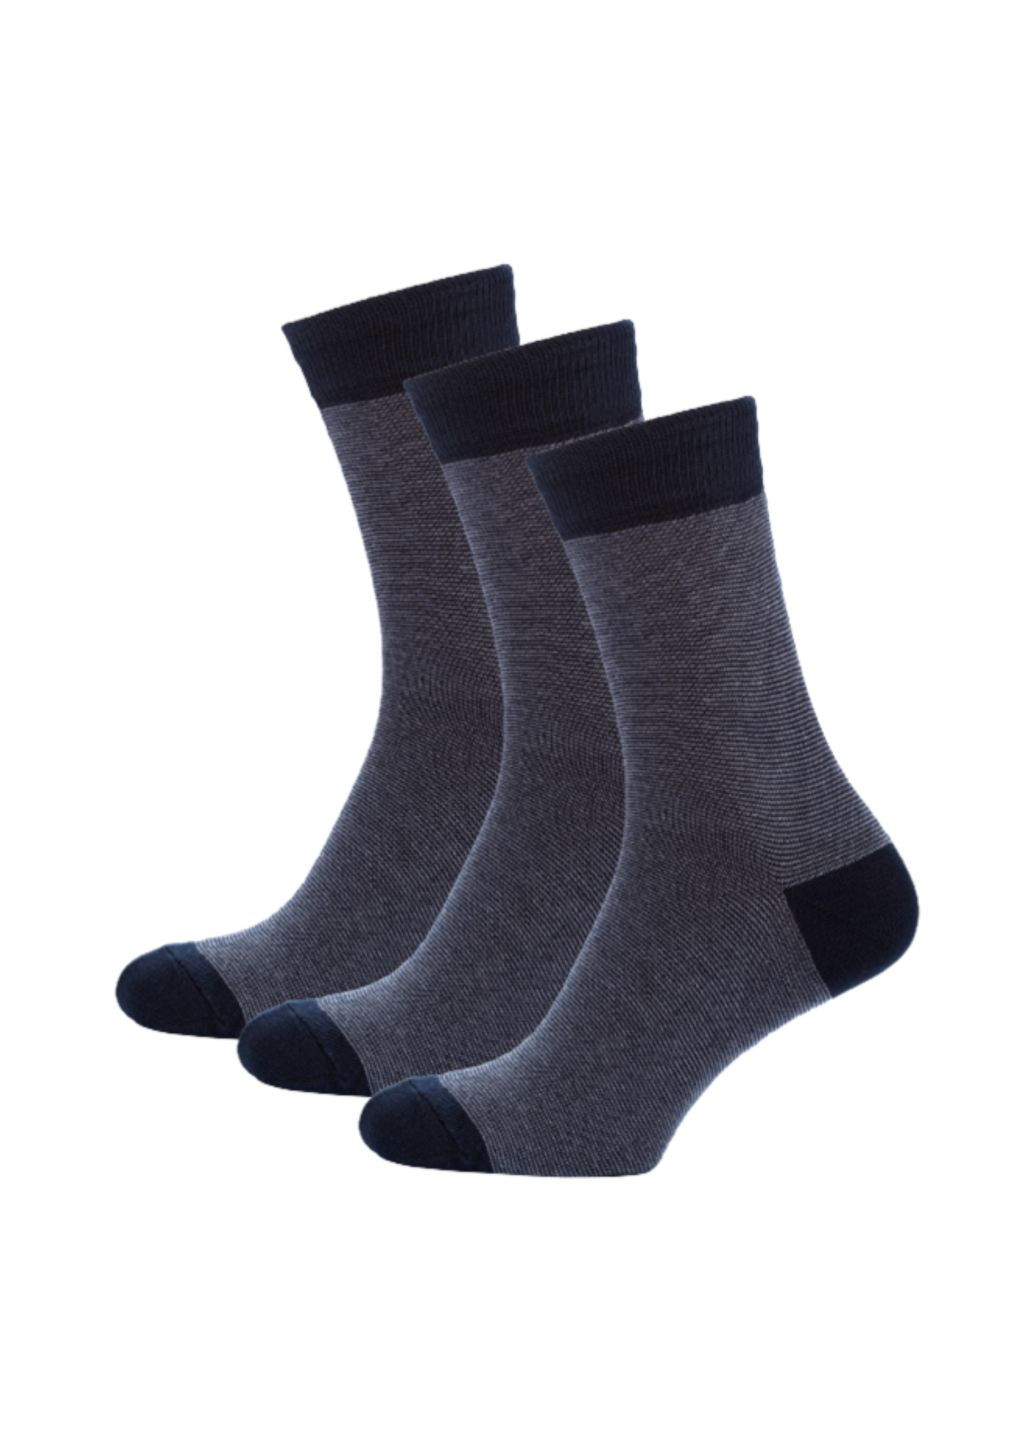 RFT Шкарпетки чол. демі вис./RT1311-002/смужки/36-39/синій/сірий. Набір (3 шт.) MZ rt1311-002_набори (260063123)